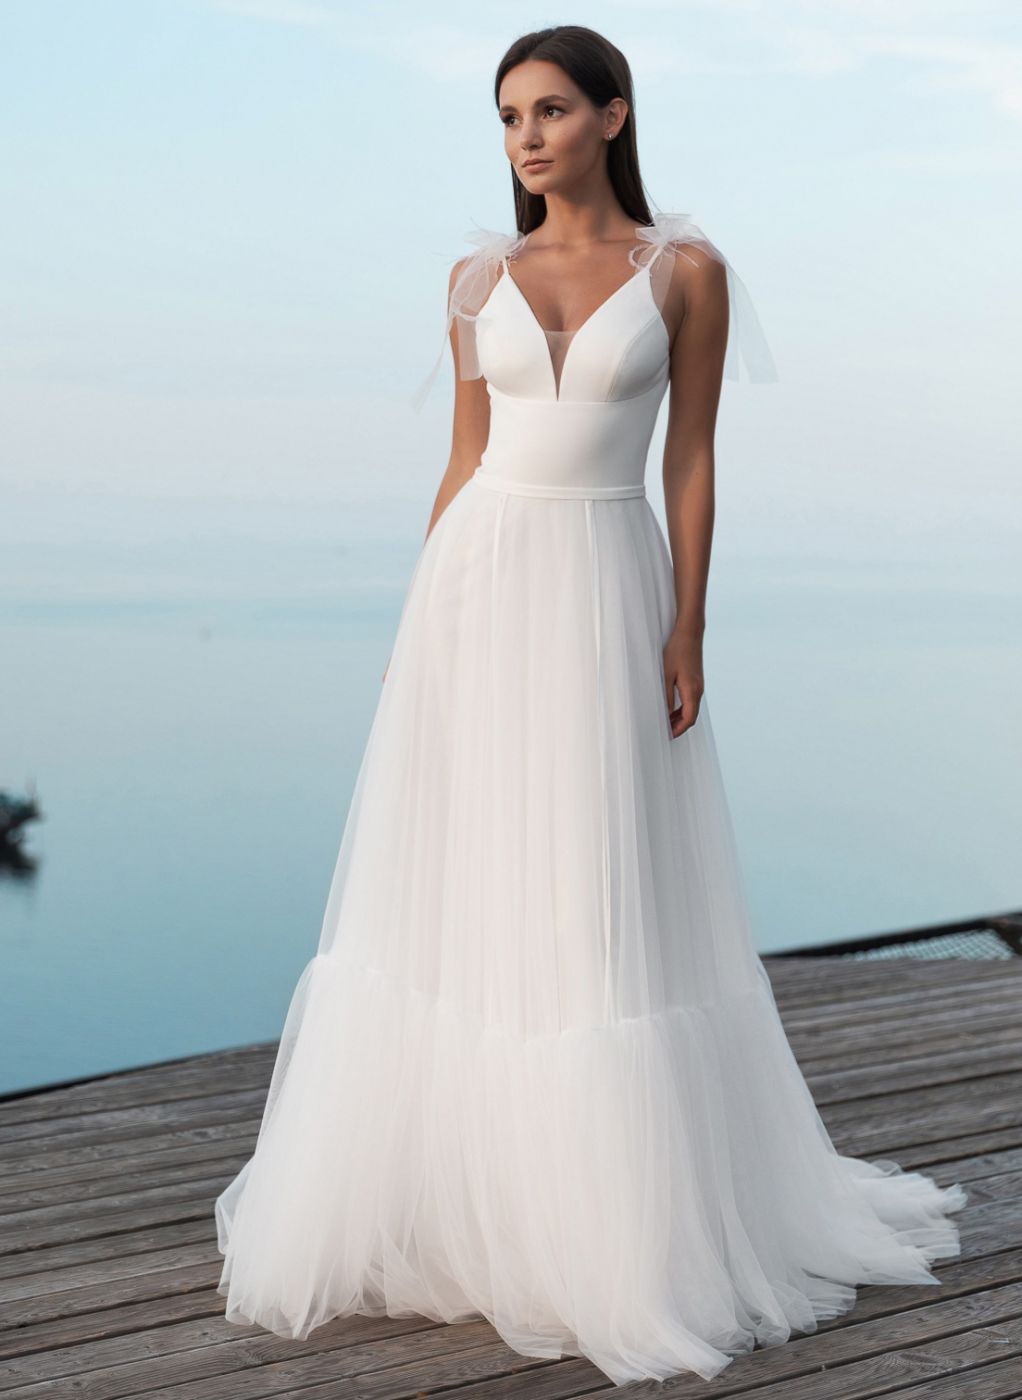 Воздушное свадебное платье А-силуэта  с нежными бретелями-бантиками Арт. 575